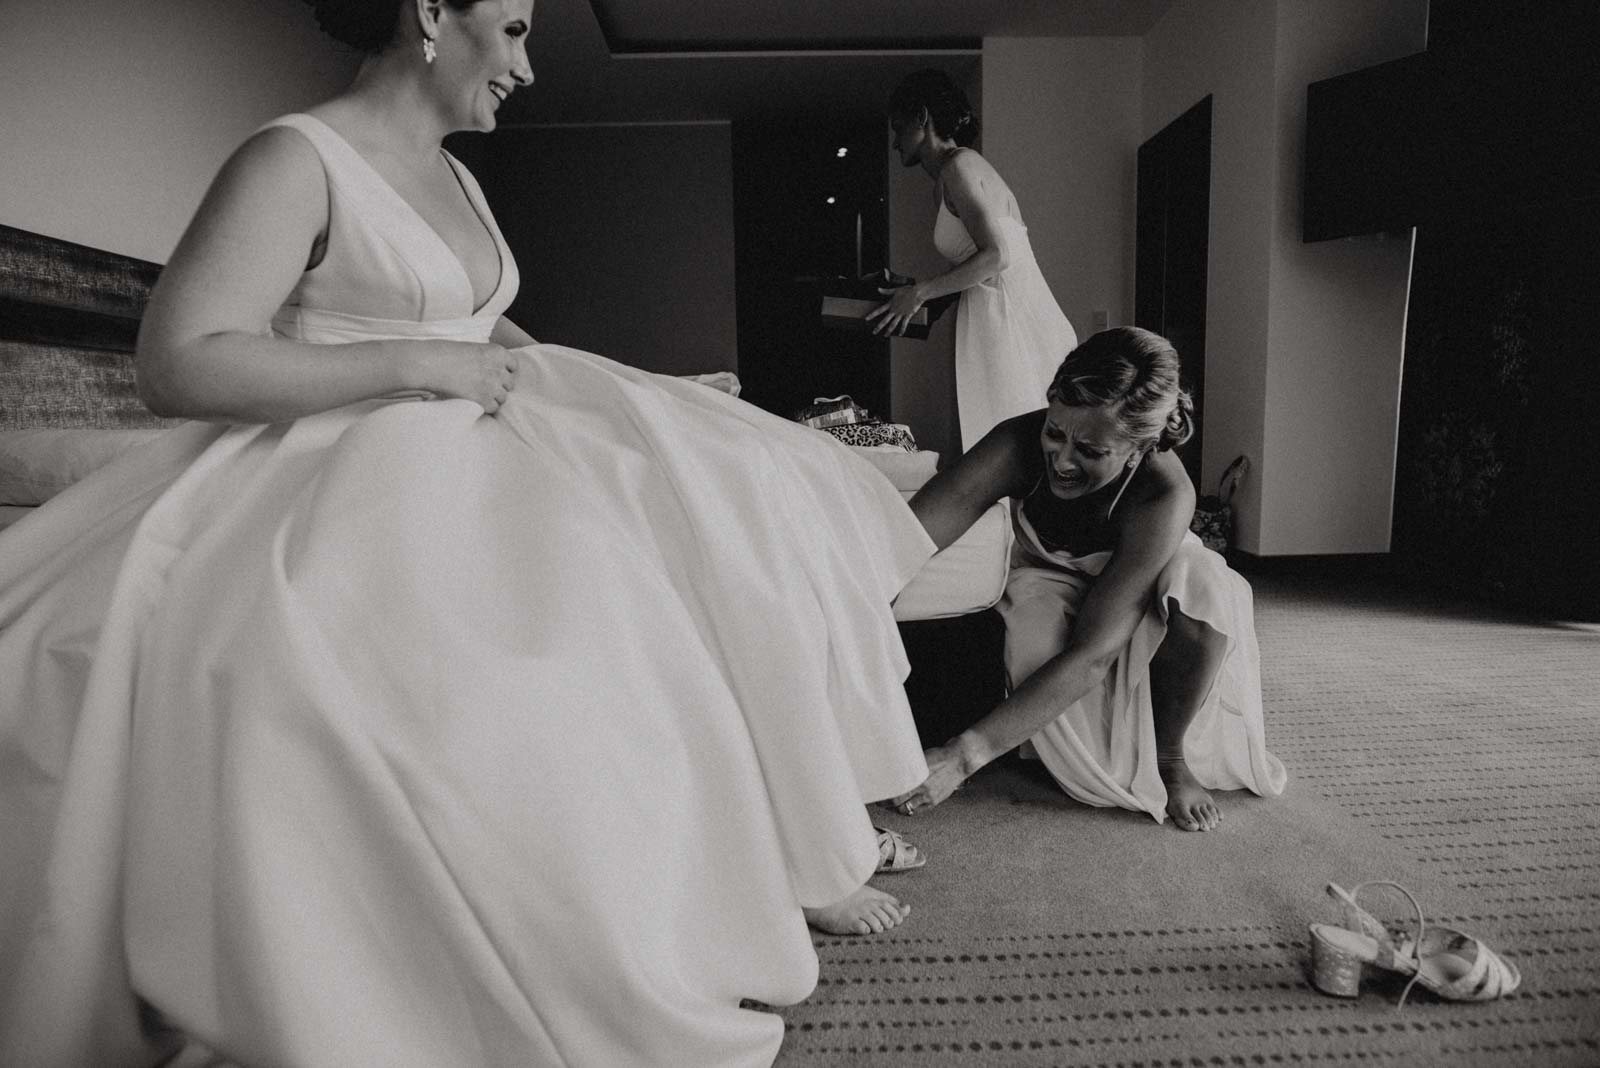 Brautjungfer hilft Braut ins Hochzeitskleid